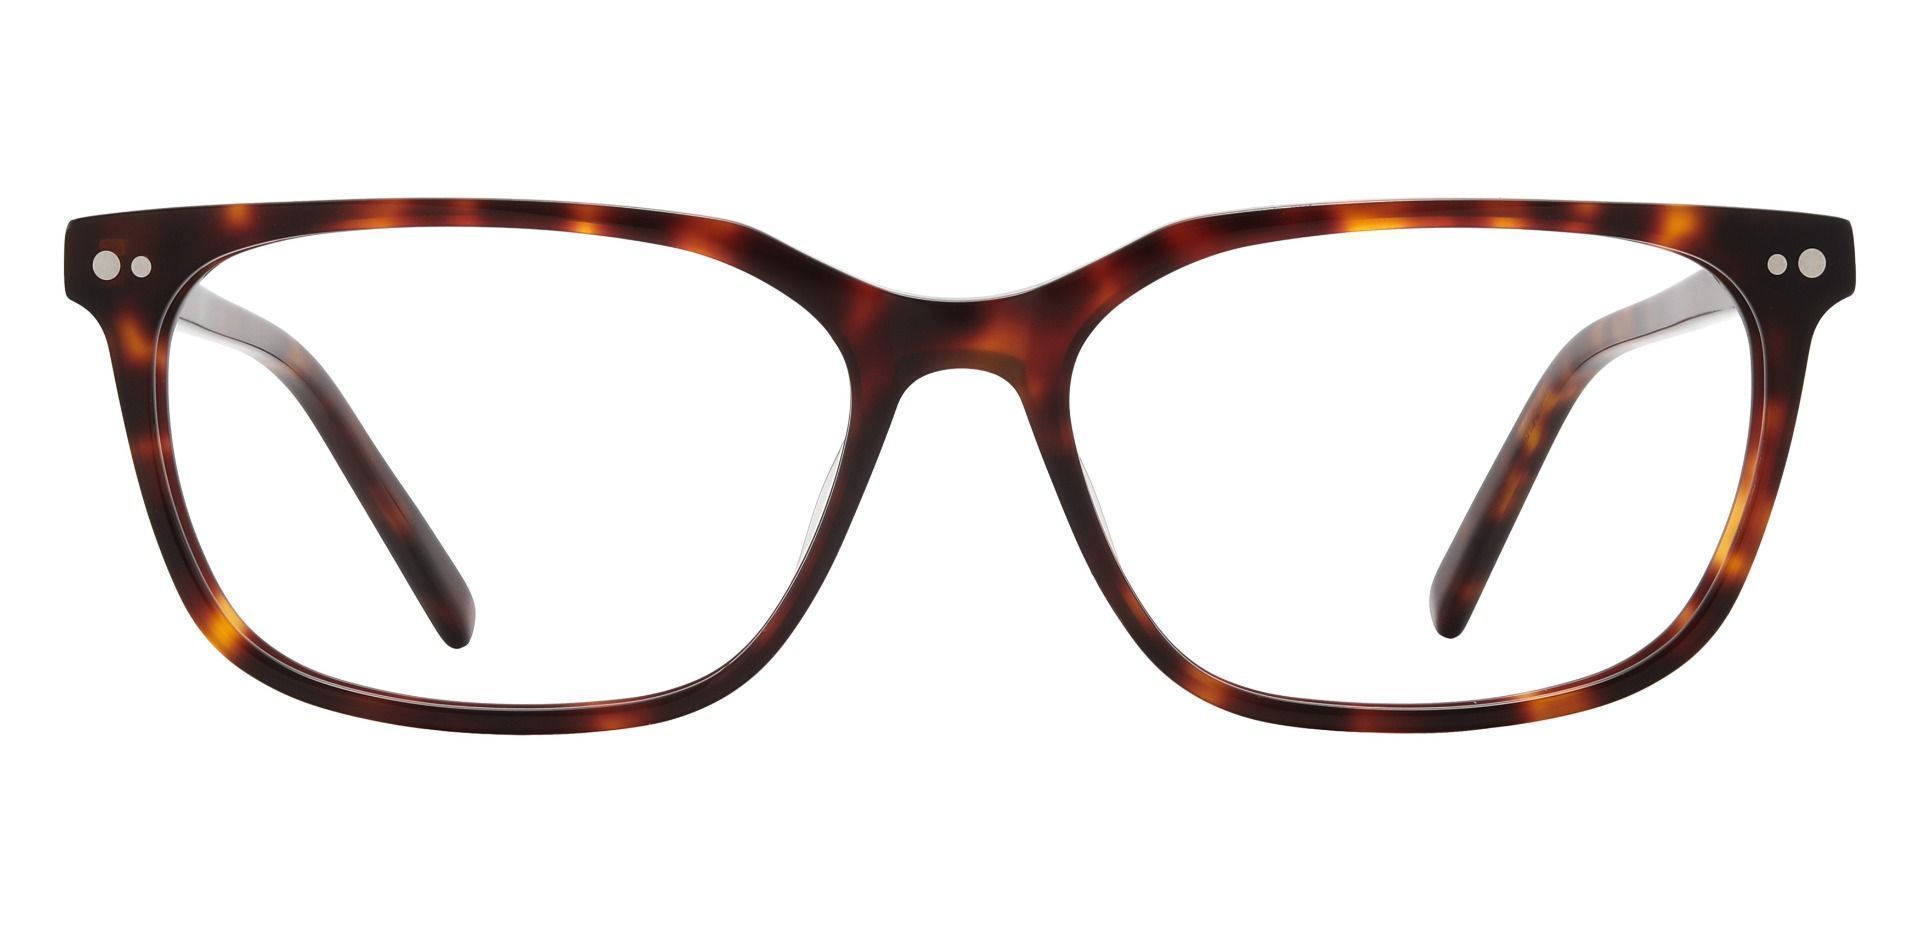 Zephyr Rectangle Prescription Glasses - Tortoise